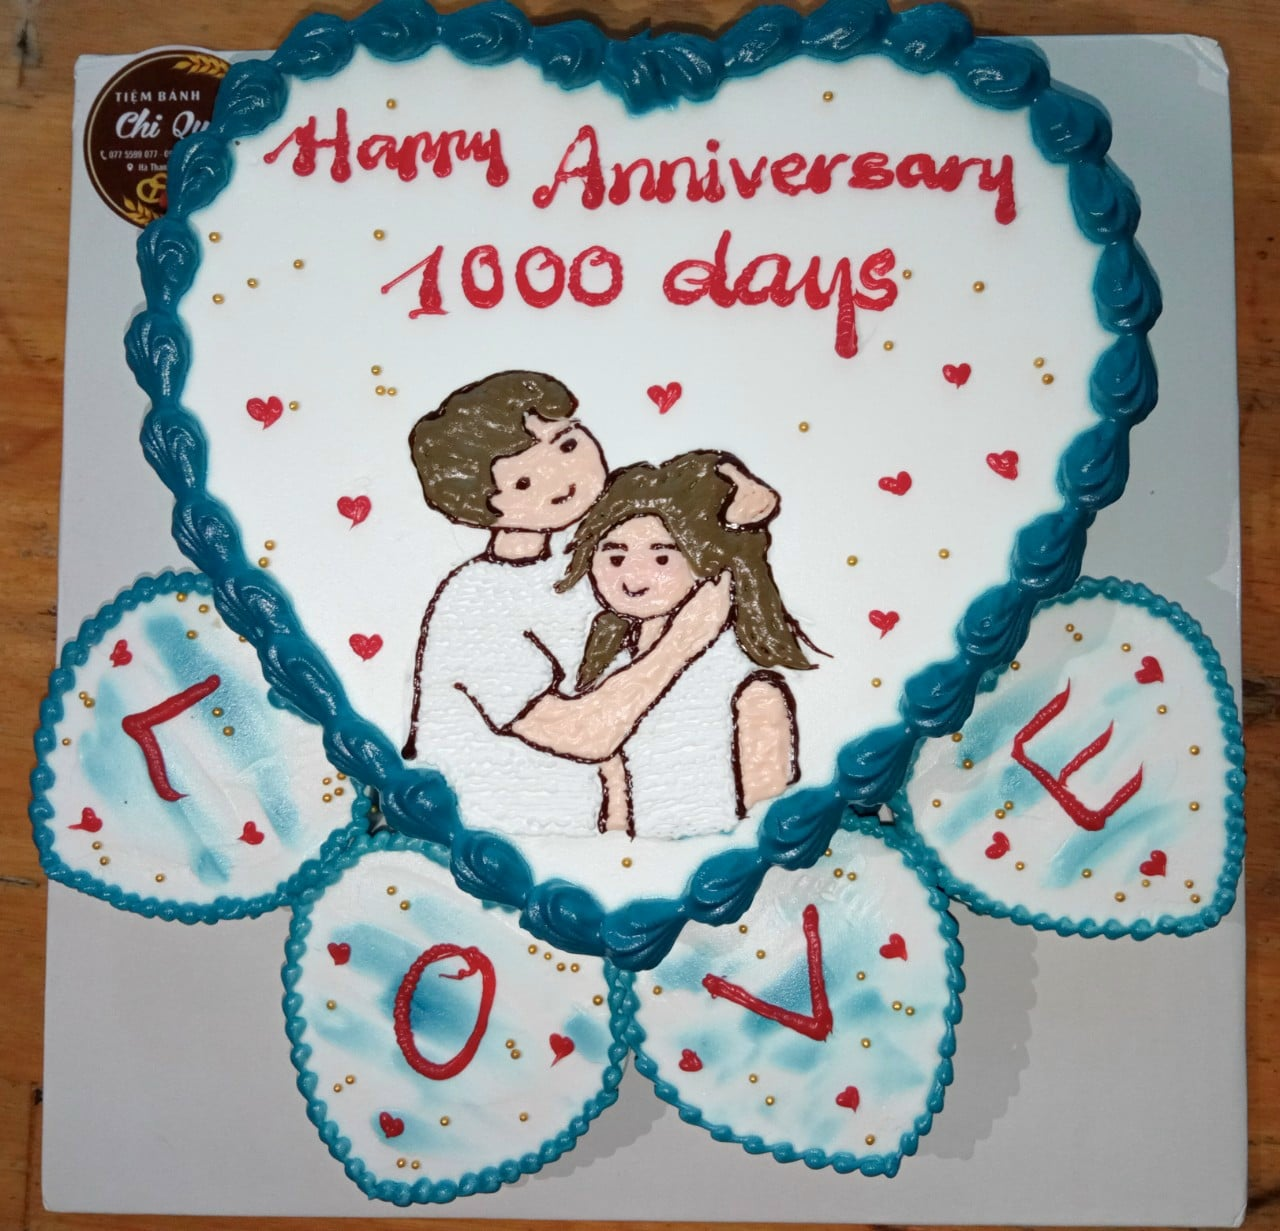 Khoe bánh trái tim kỷ niệm 1.000 ngày yêu, gái xinh chia sẻ chuyện tình 'chủ động tấn công' khiến dân mạng ngưỡng mộ